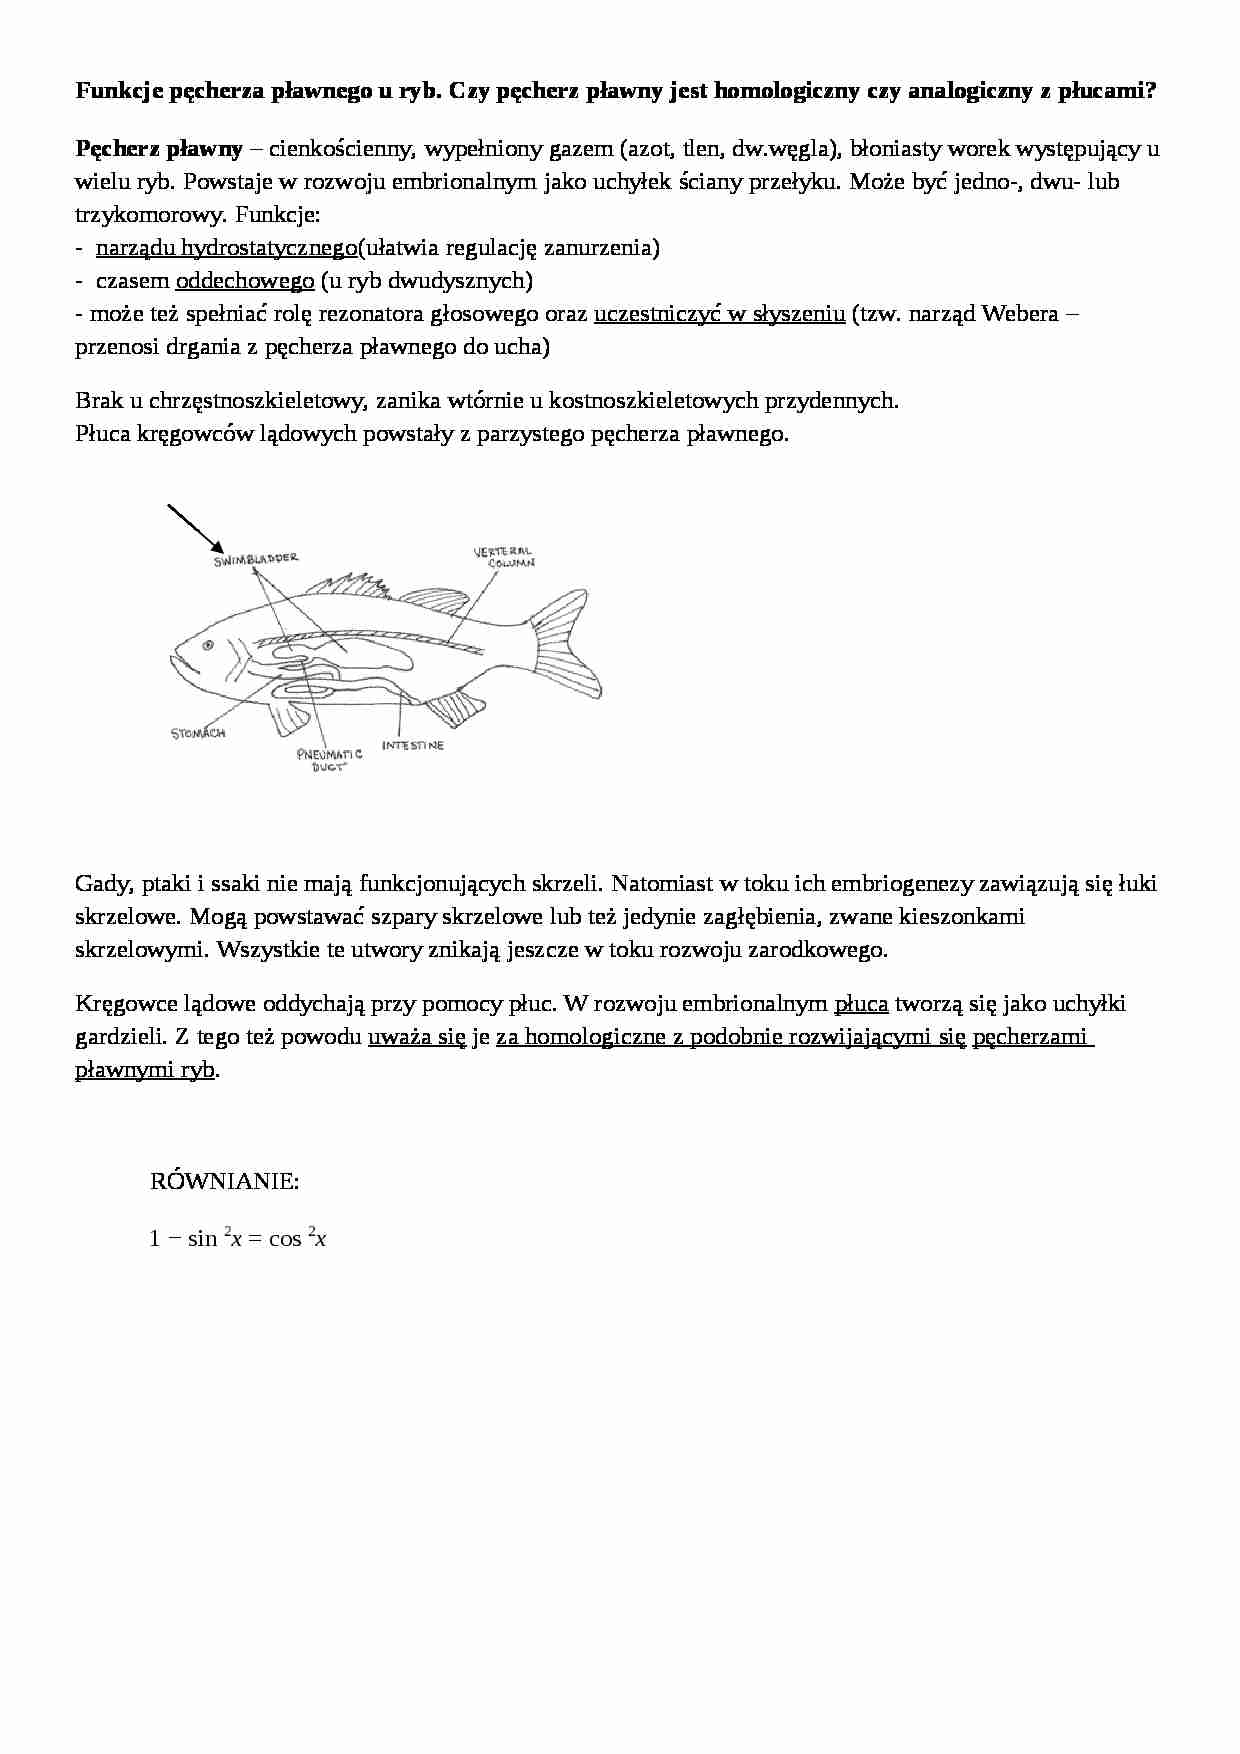 Wykład - funkcje pęcherzyka prawnego ryb - strona 1